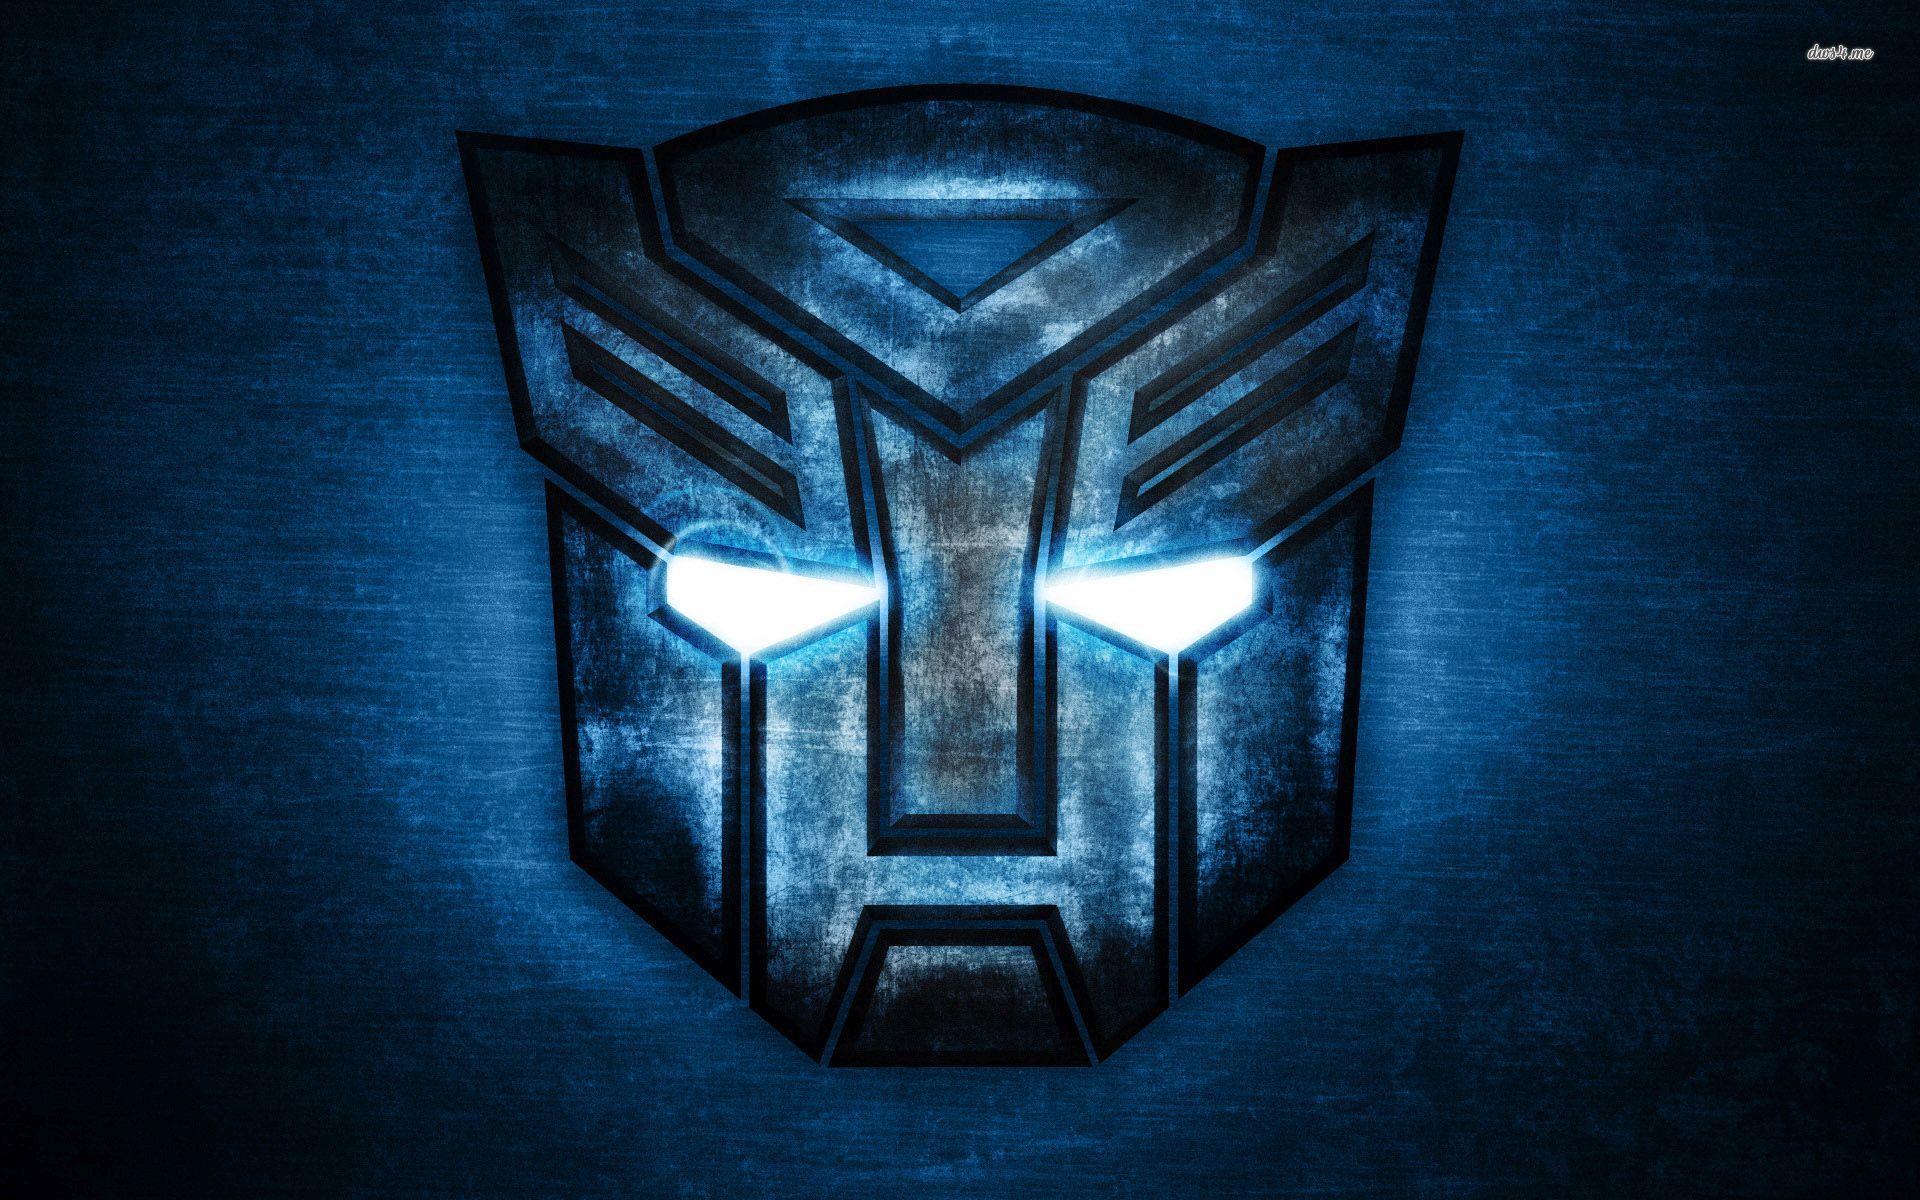 4K Ultra HD Transformers Wallpapers  Top Những Hình Ảnh Đẹp